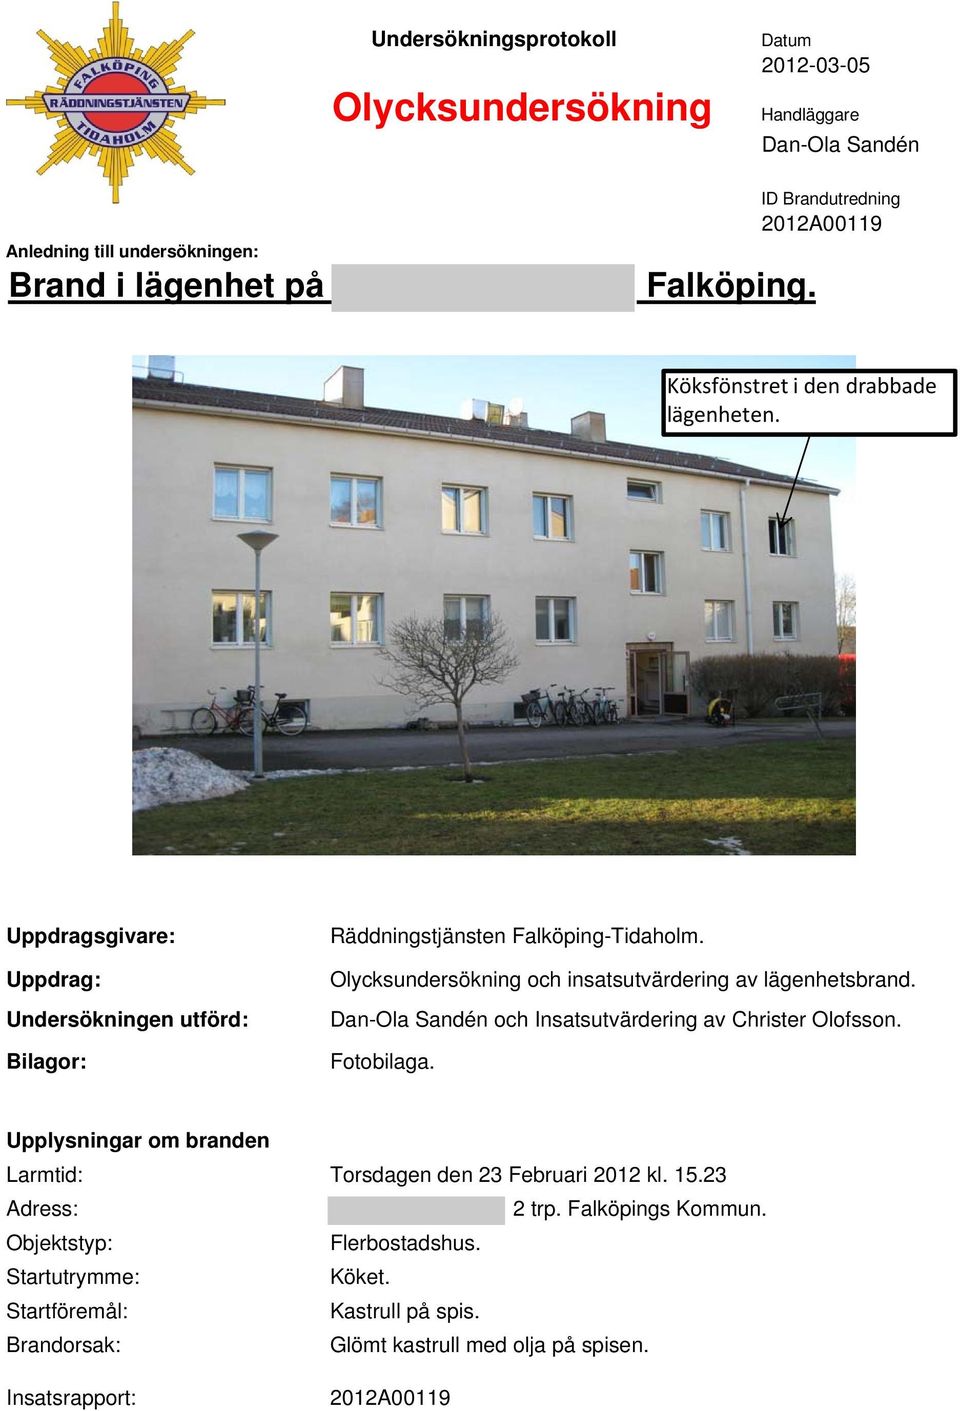 Olycksundersökning och insatsutvärdering av lägenhetsbrand. Dan-Ola Sandén och Insatsutvärdering av Christer Olofsson. Fotobilaga.